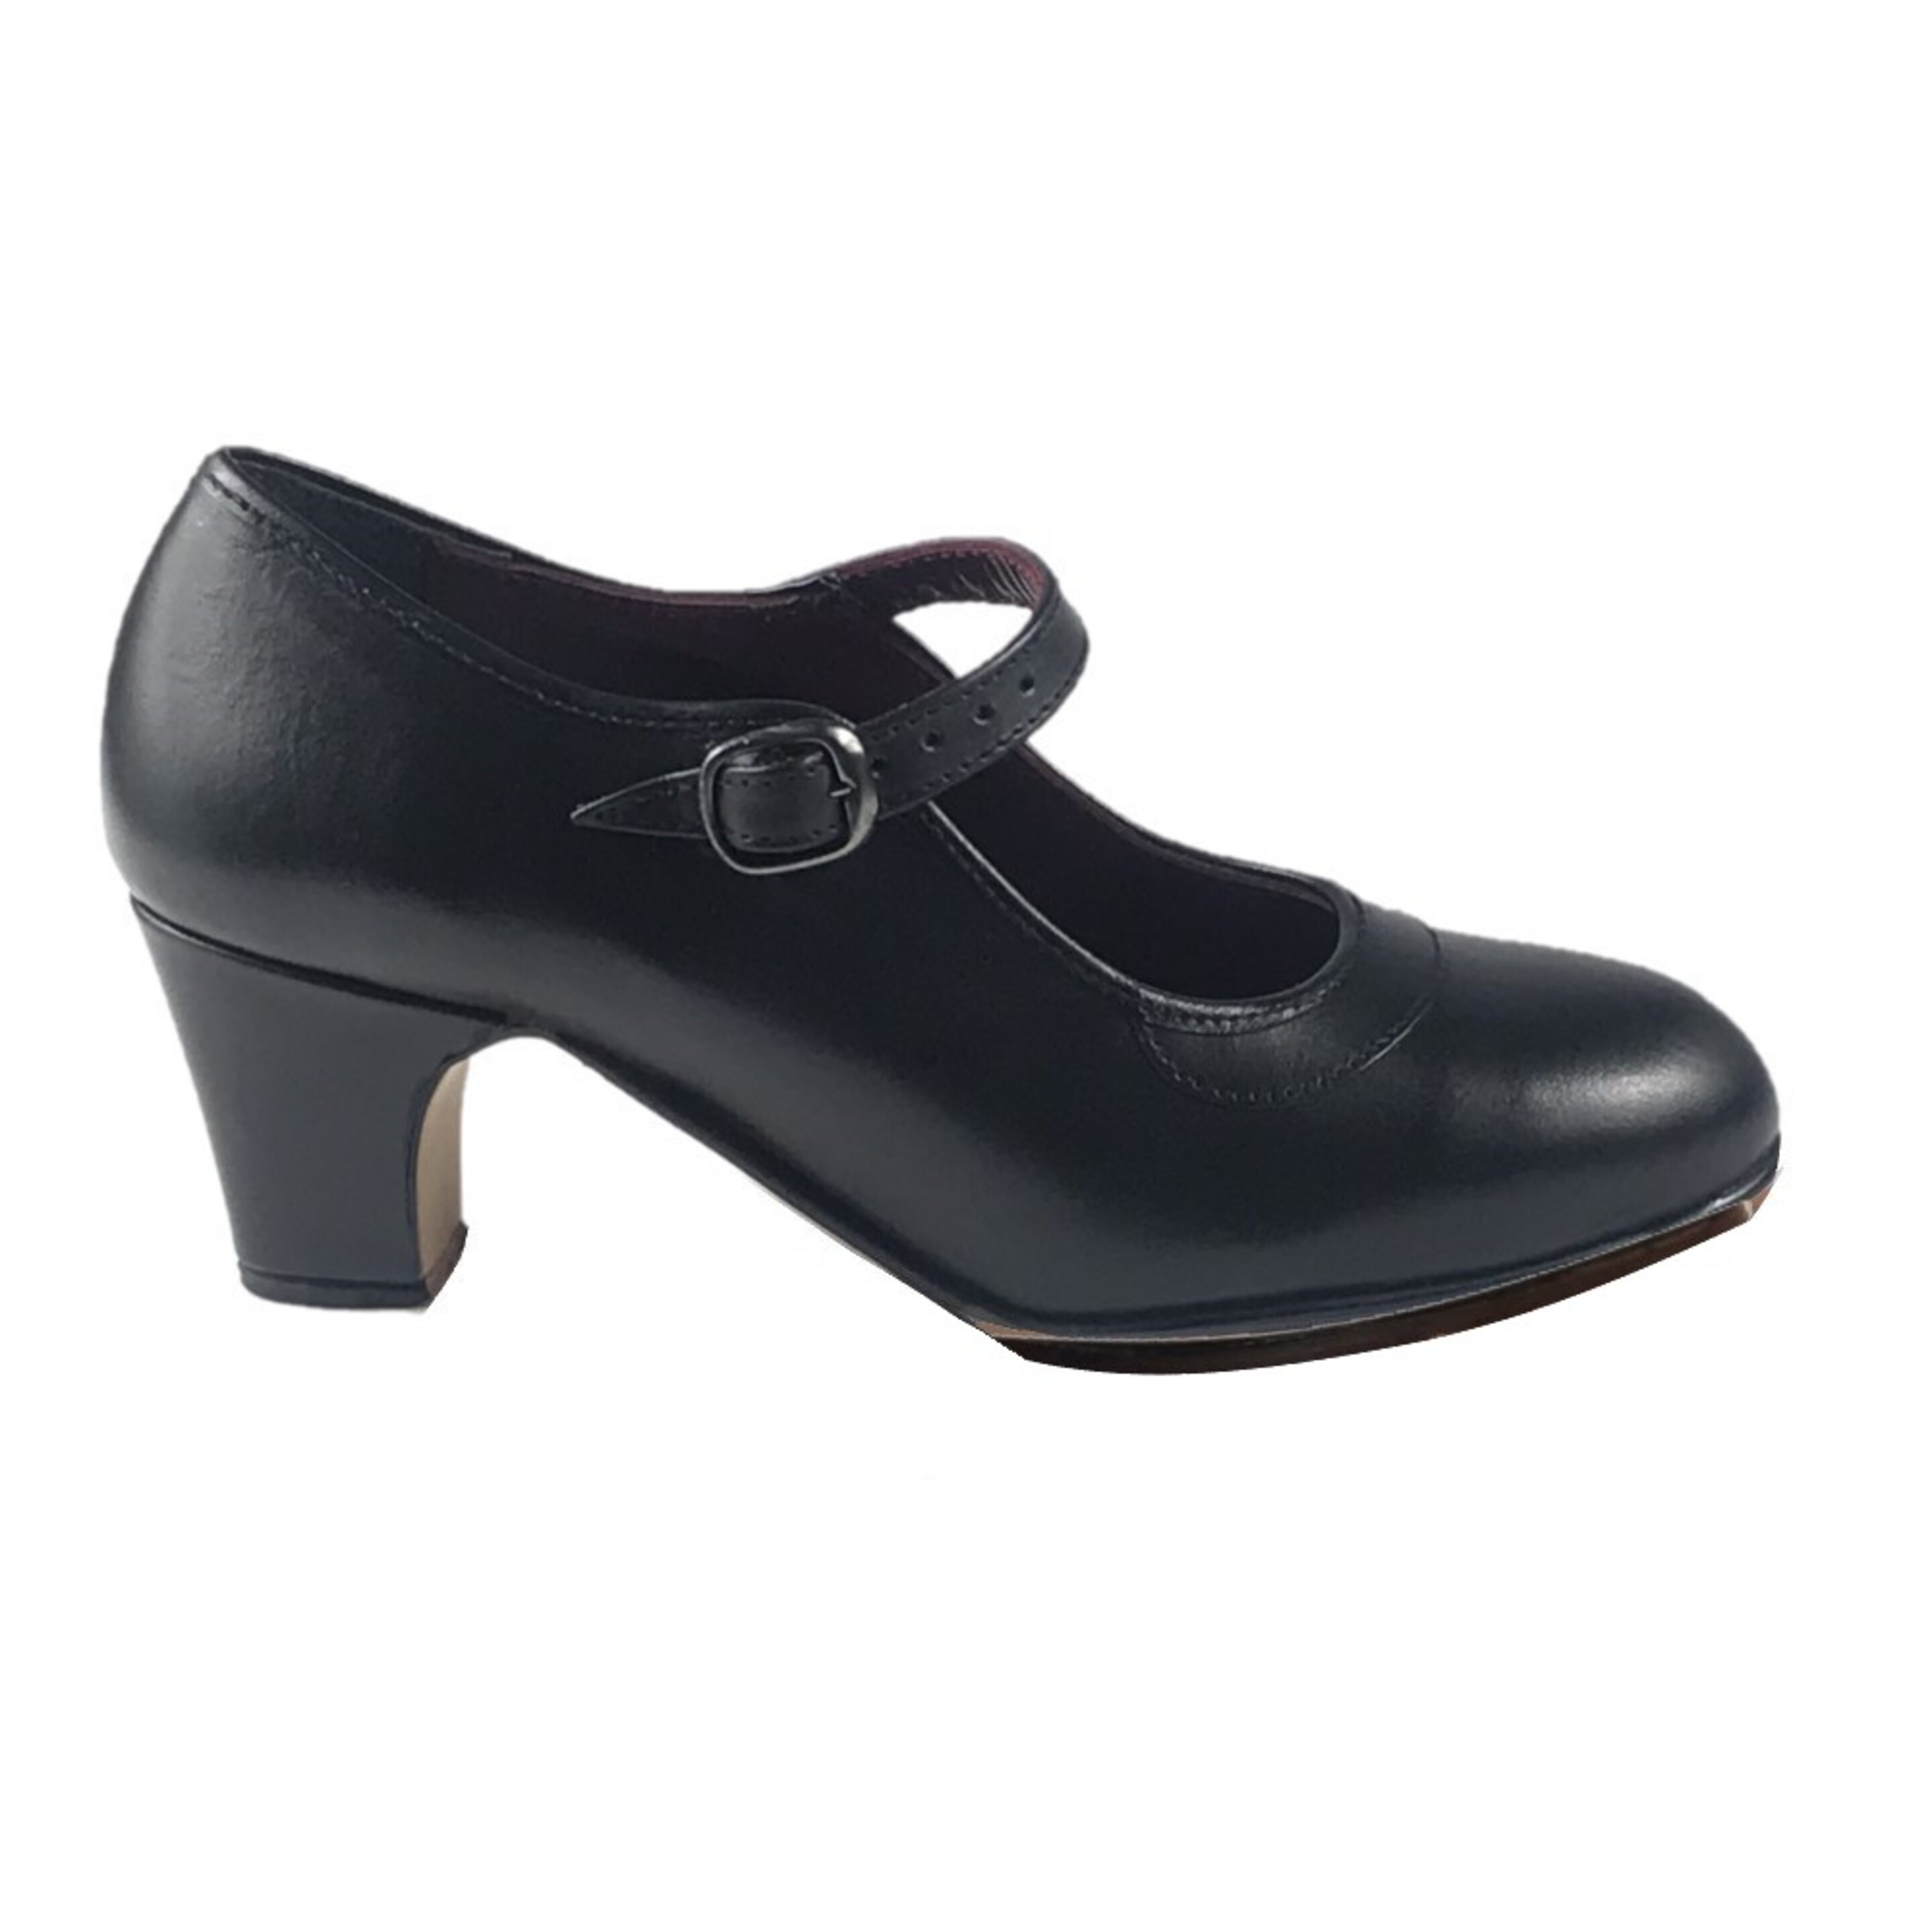 Zapatos Profesionales De Piel Con Doble Suela Para Baile Flamenco - Negro  MKP